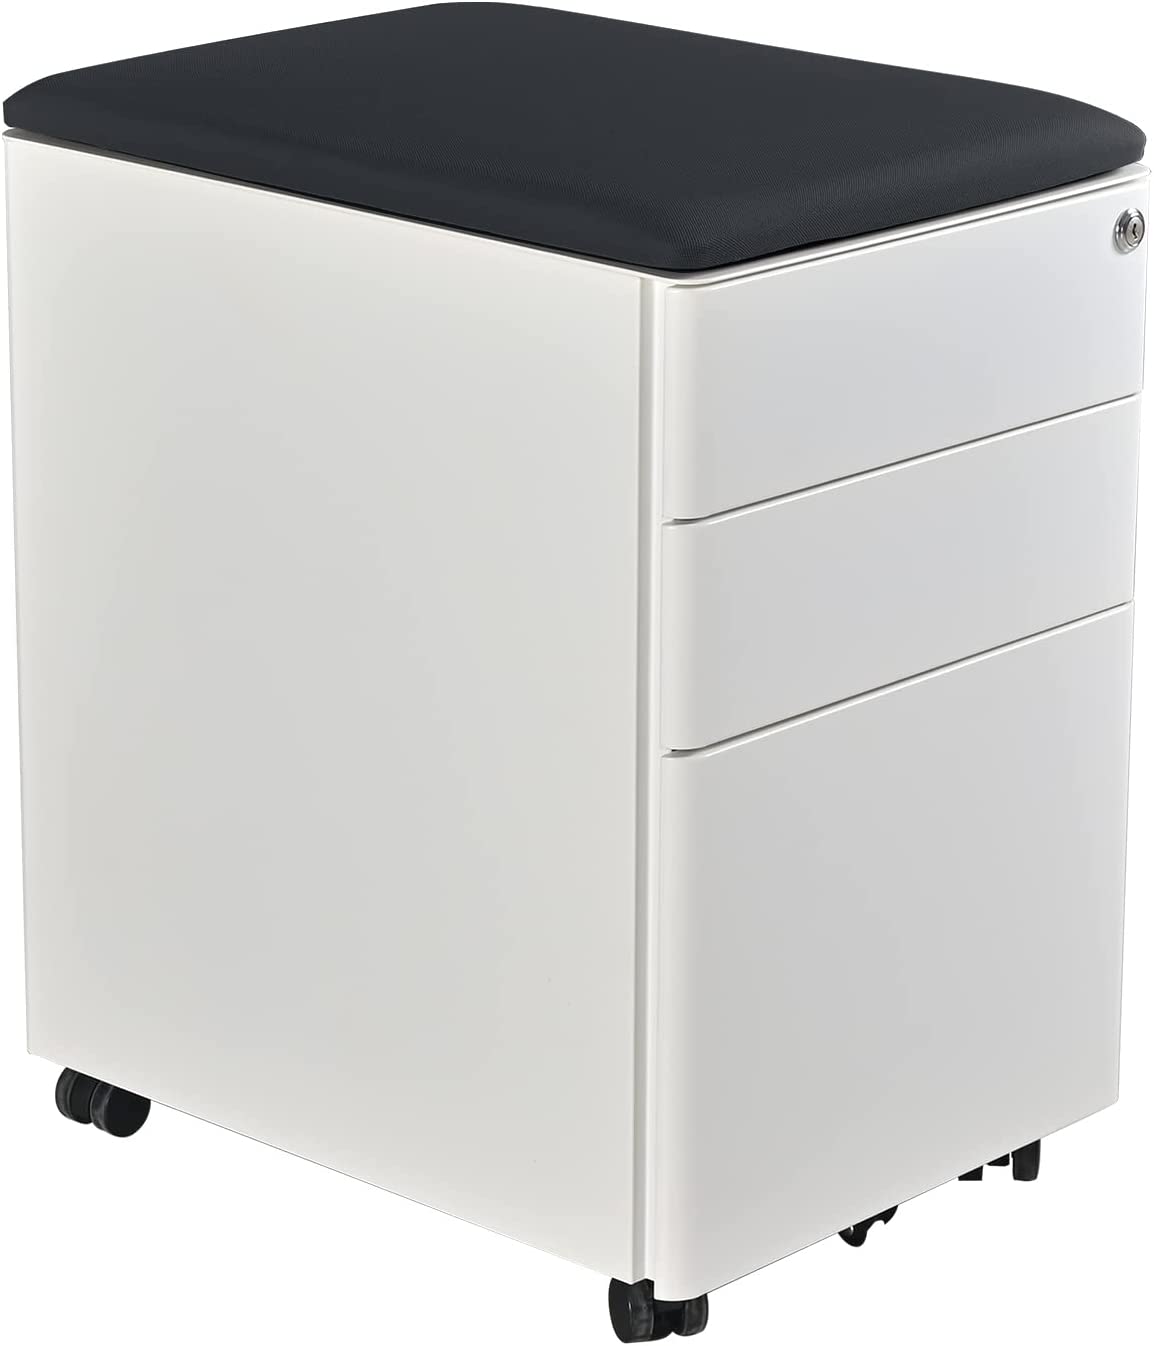 Mobile Pedestal, 3-Drawer File Cabinet, Under desk Drawer with Castor Wheels by Navodesk